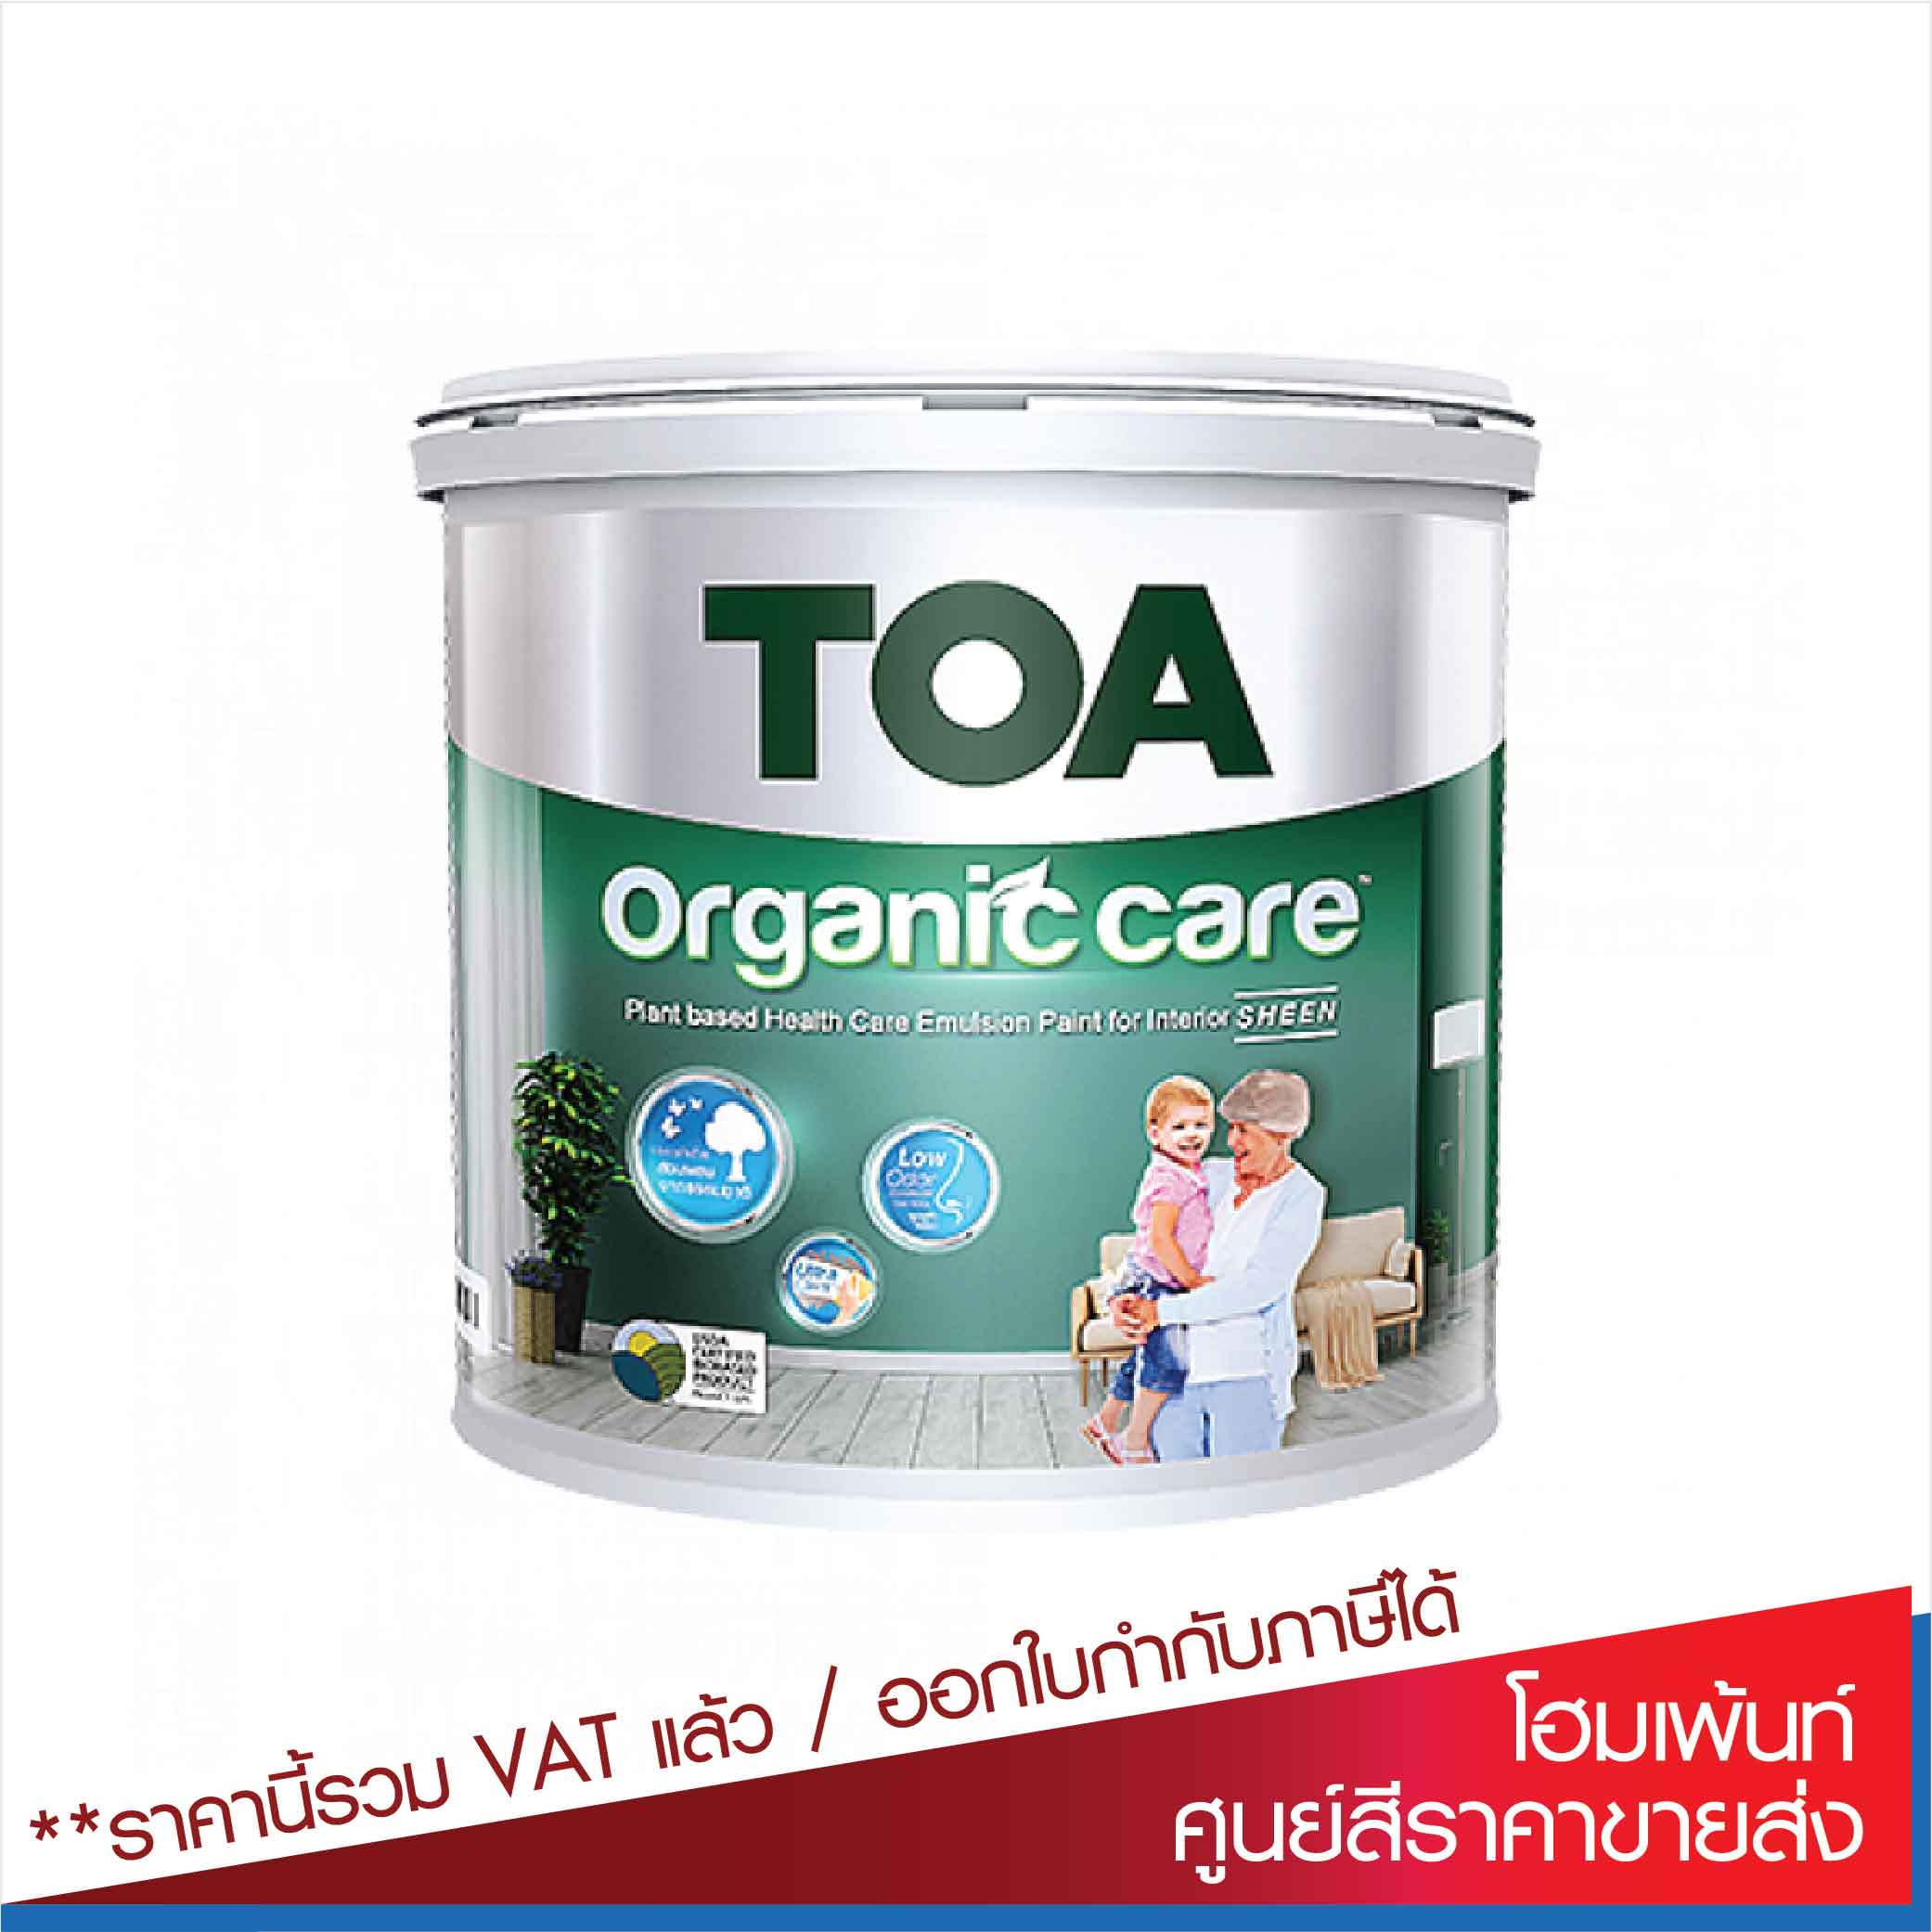  ทีโอเอ ออร์แกนิค แคร์ สีน้ำอะคริลิกมีส่วนผสมจากพืช / Toa organic care /base A